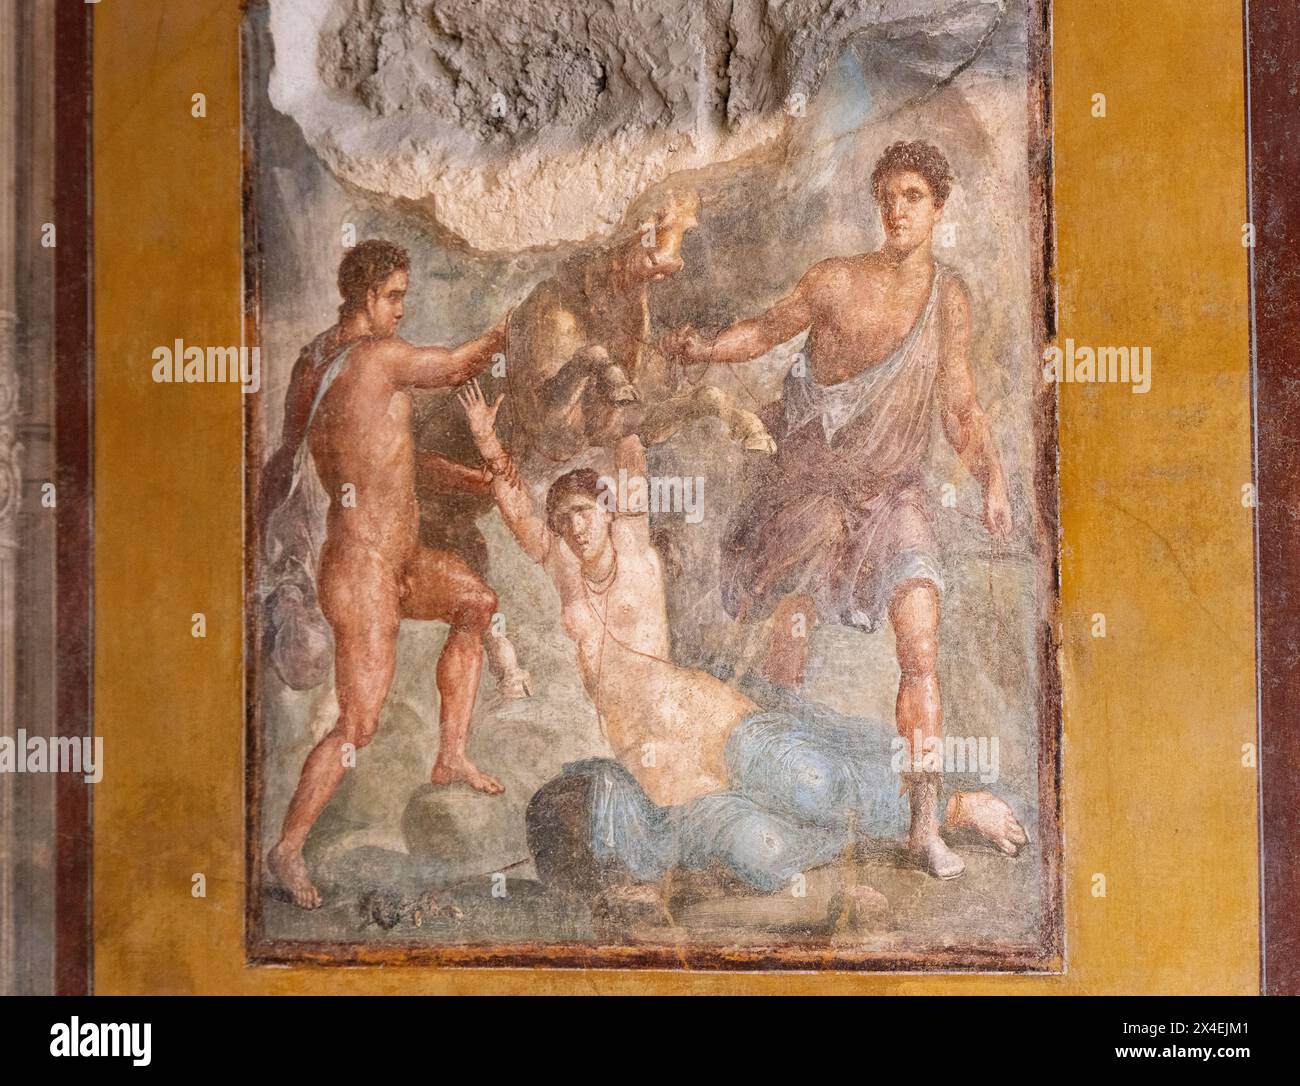 Fresque de Pompéi, 'la punition de Dirce', dans la Maison des Vettii, Pompéi Italie ; Ier siècle après J.-C. ; peinture romaine, exemple de mythologique Banque D'Images